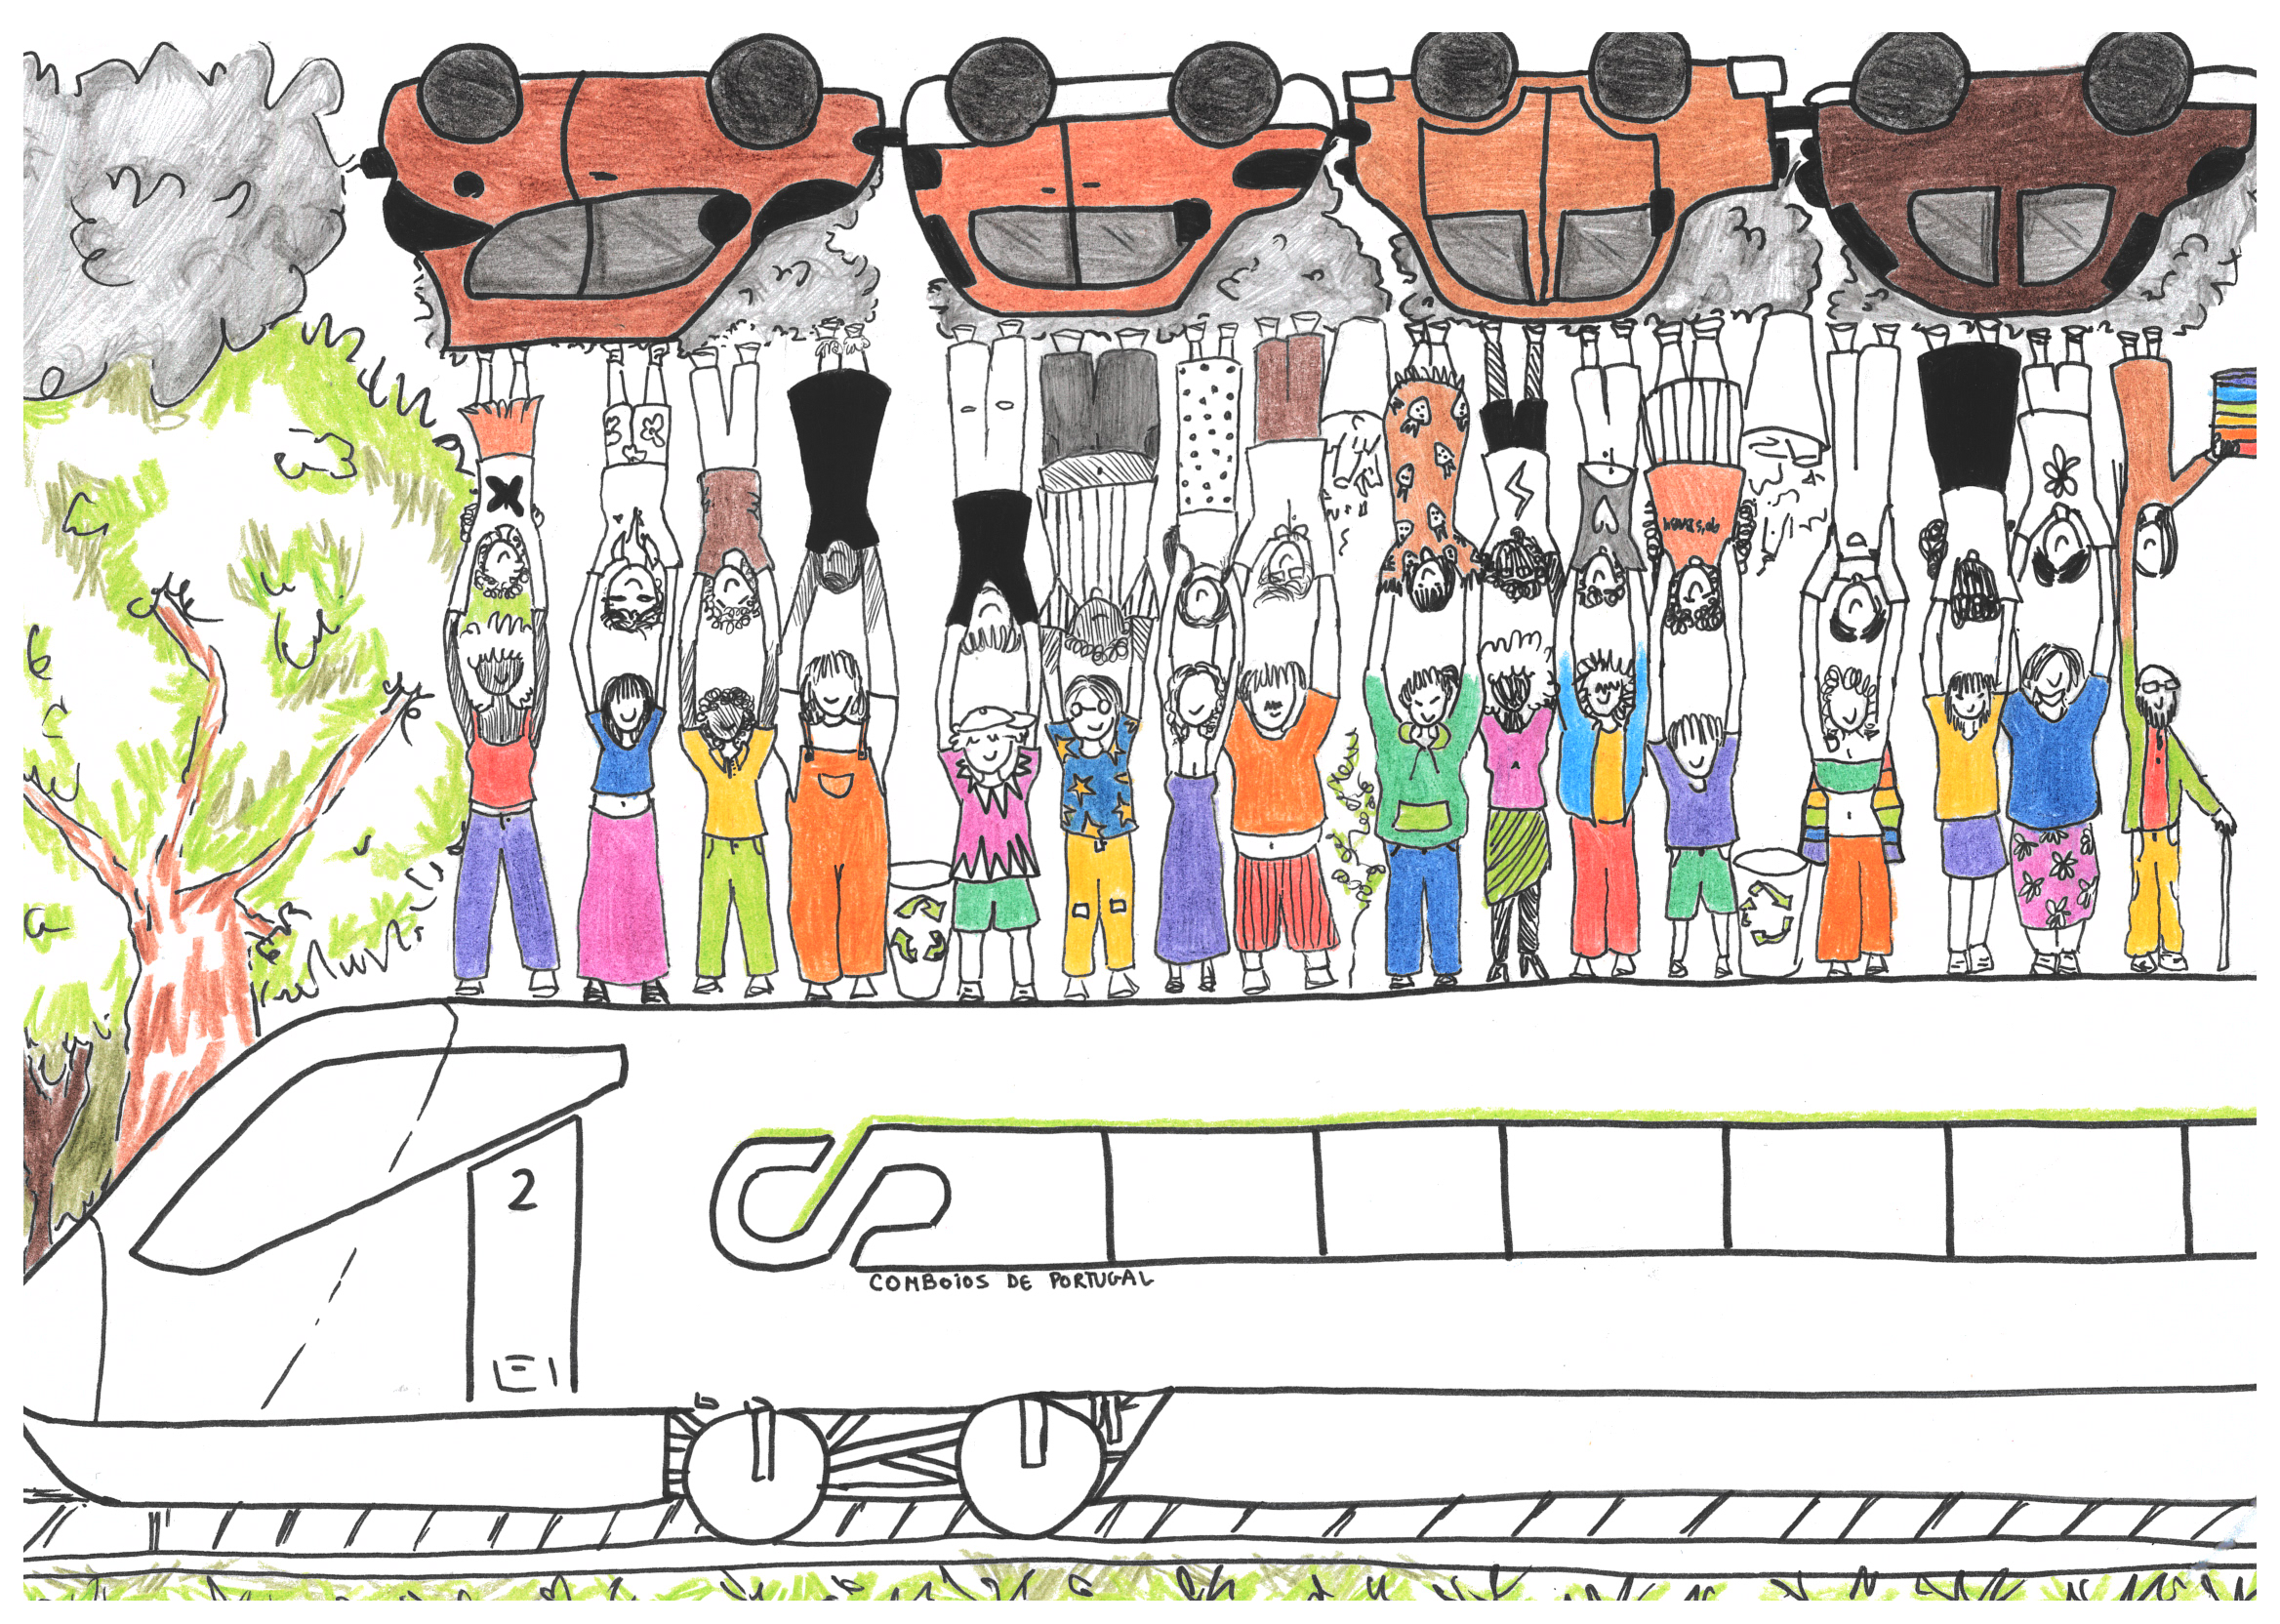 prémio museu nacional ferroviário do primeiro concurso nacional de desenho sobre o transporte ferroviário